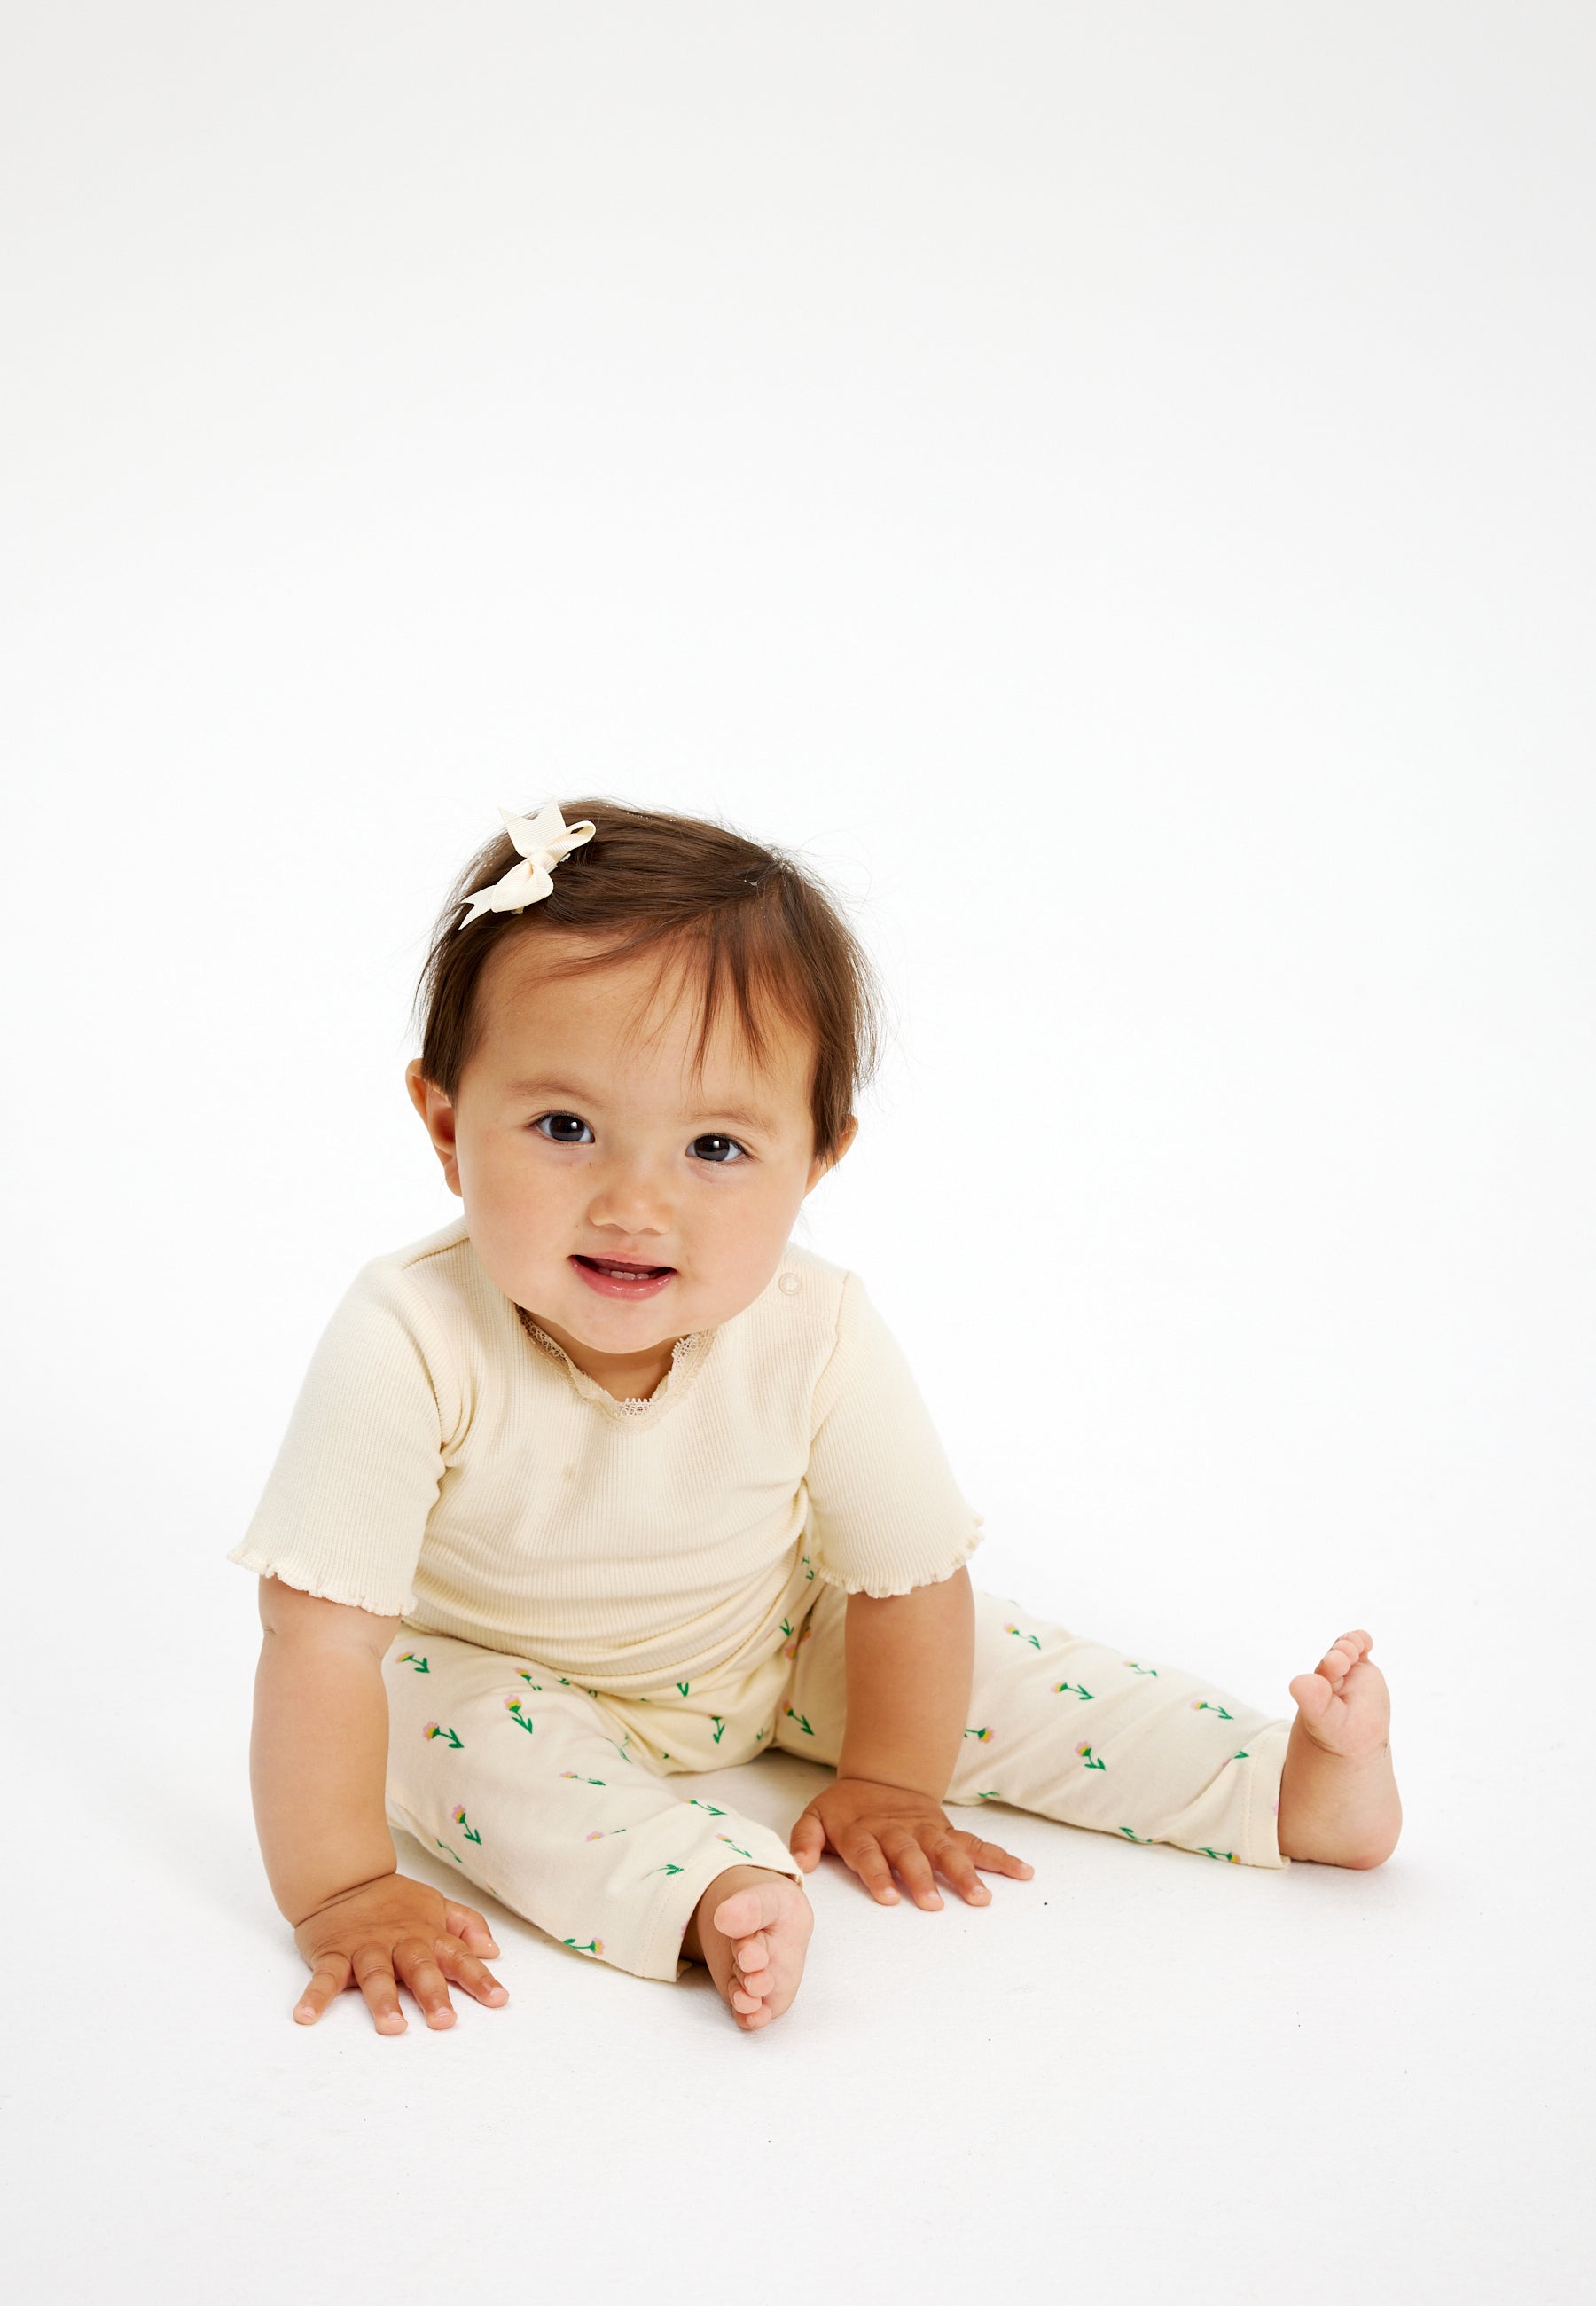 Shop tøj til baby pigen fra 0-4 år. Her hos THE NEW siblings finder du bl.a. nye styles fra Summer 24 kollektionen